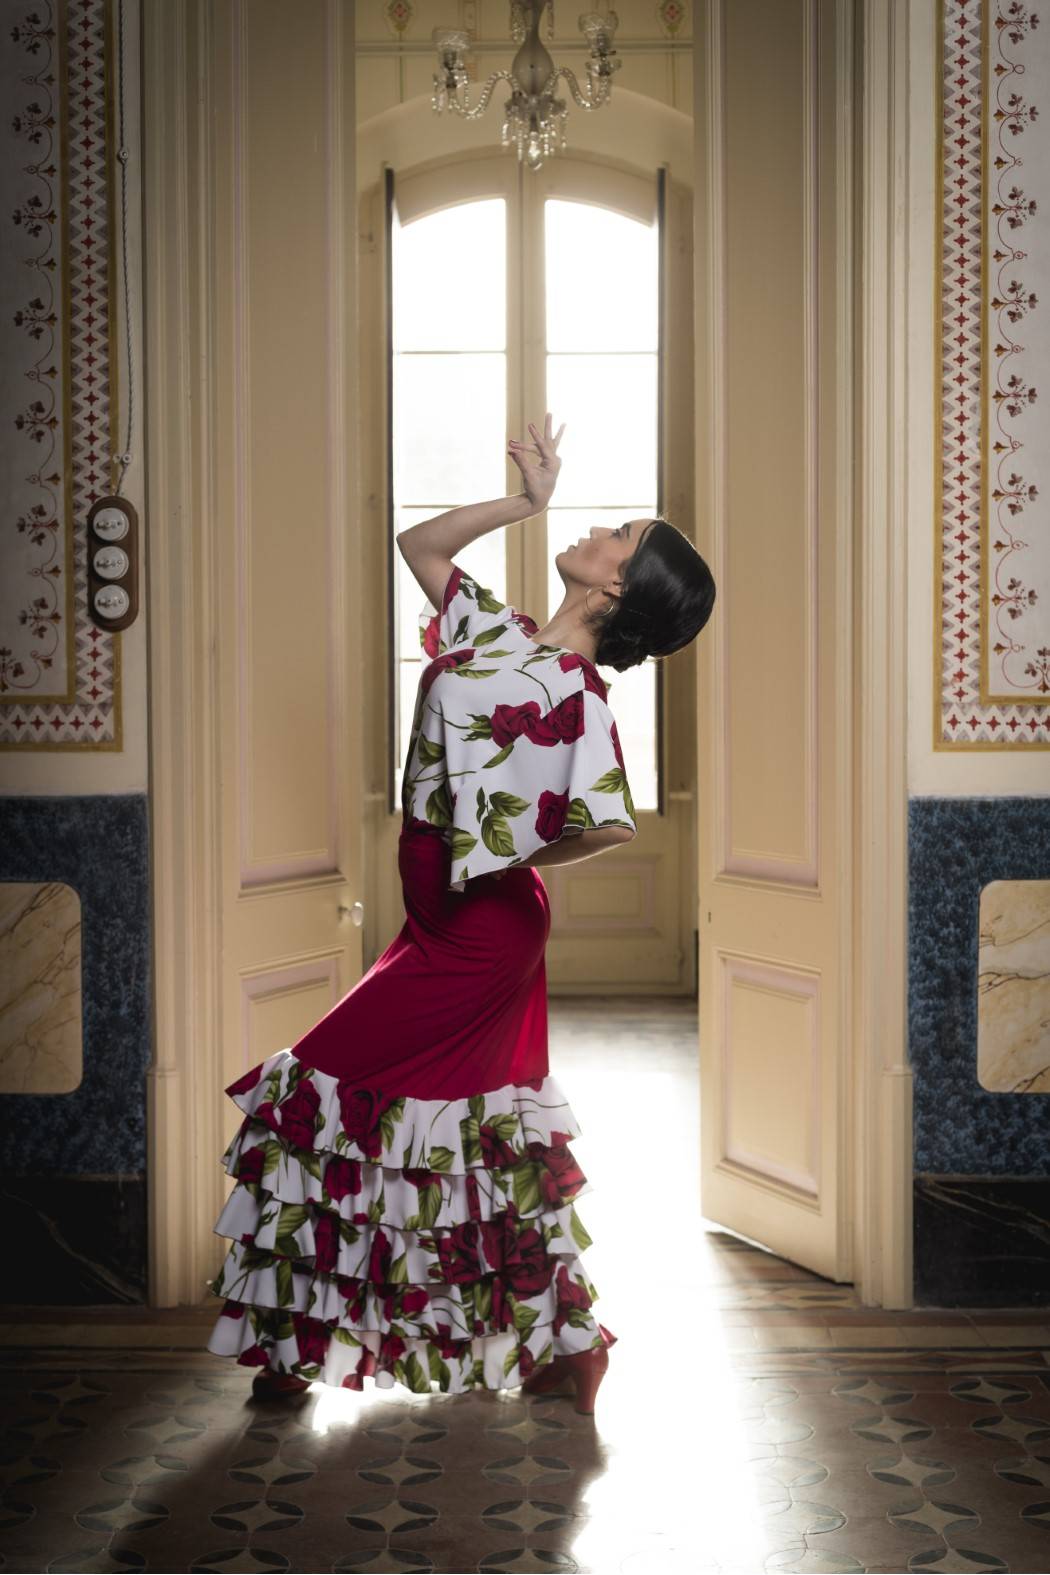 Falda Flamenca Roja para Mujer